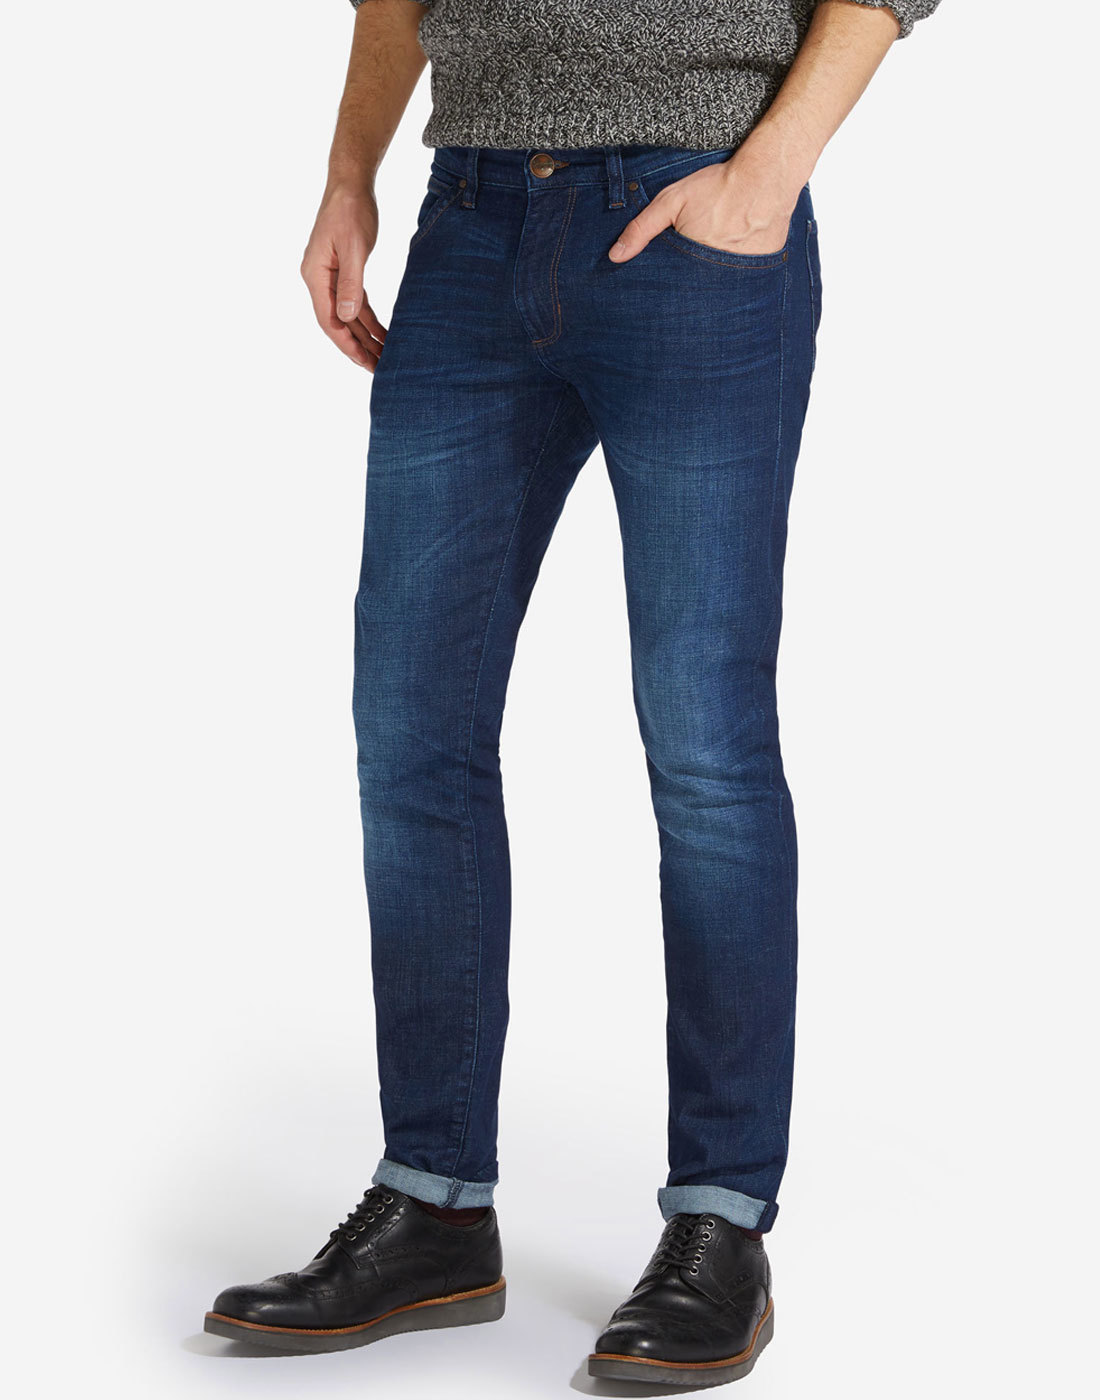 wrangler retro skinny jeans